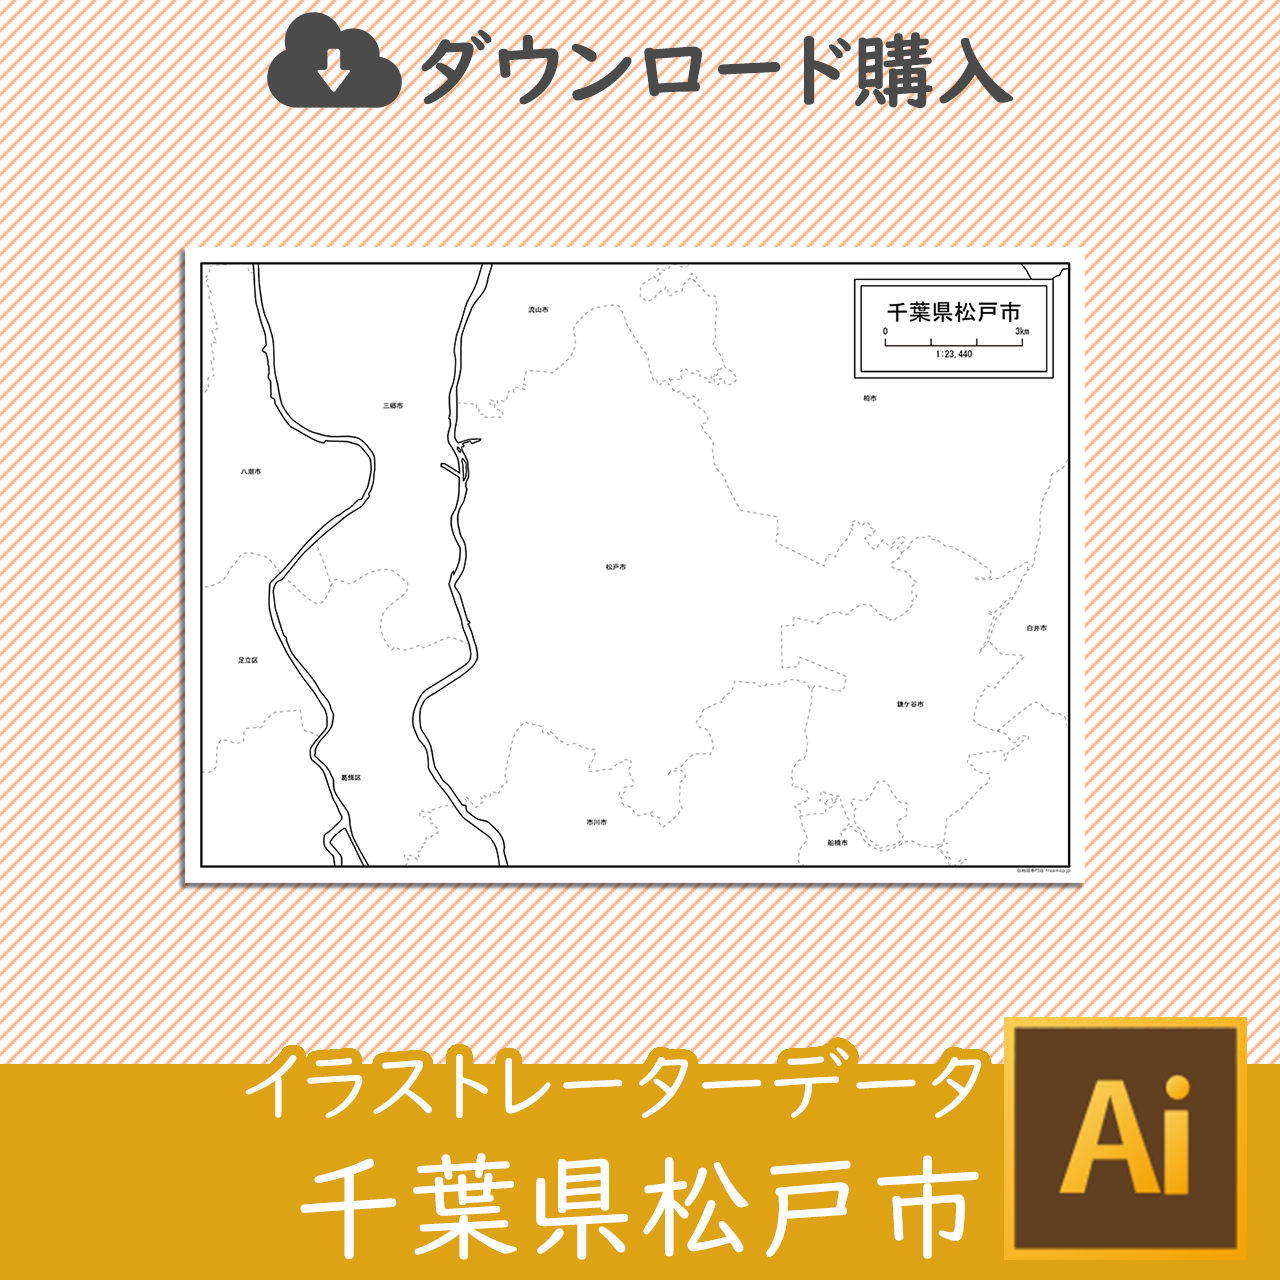 松戸市のaiデータのサムネイル画像